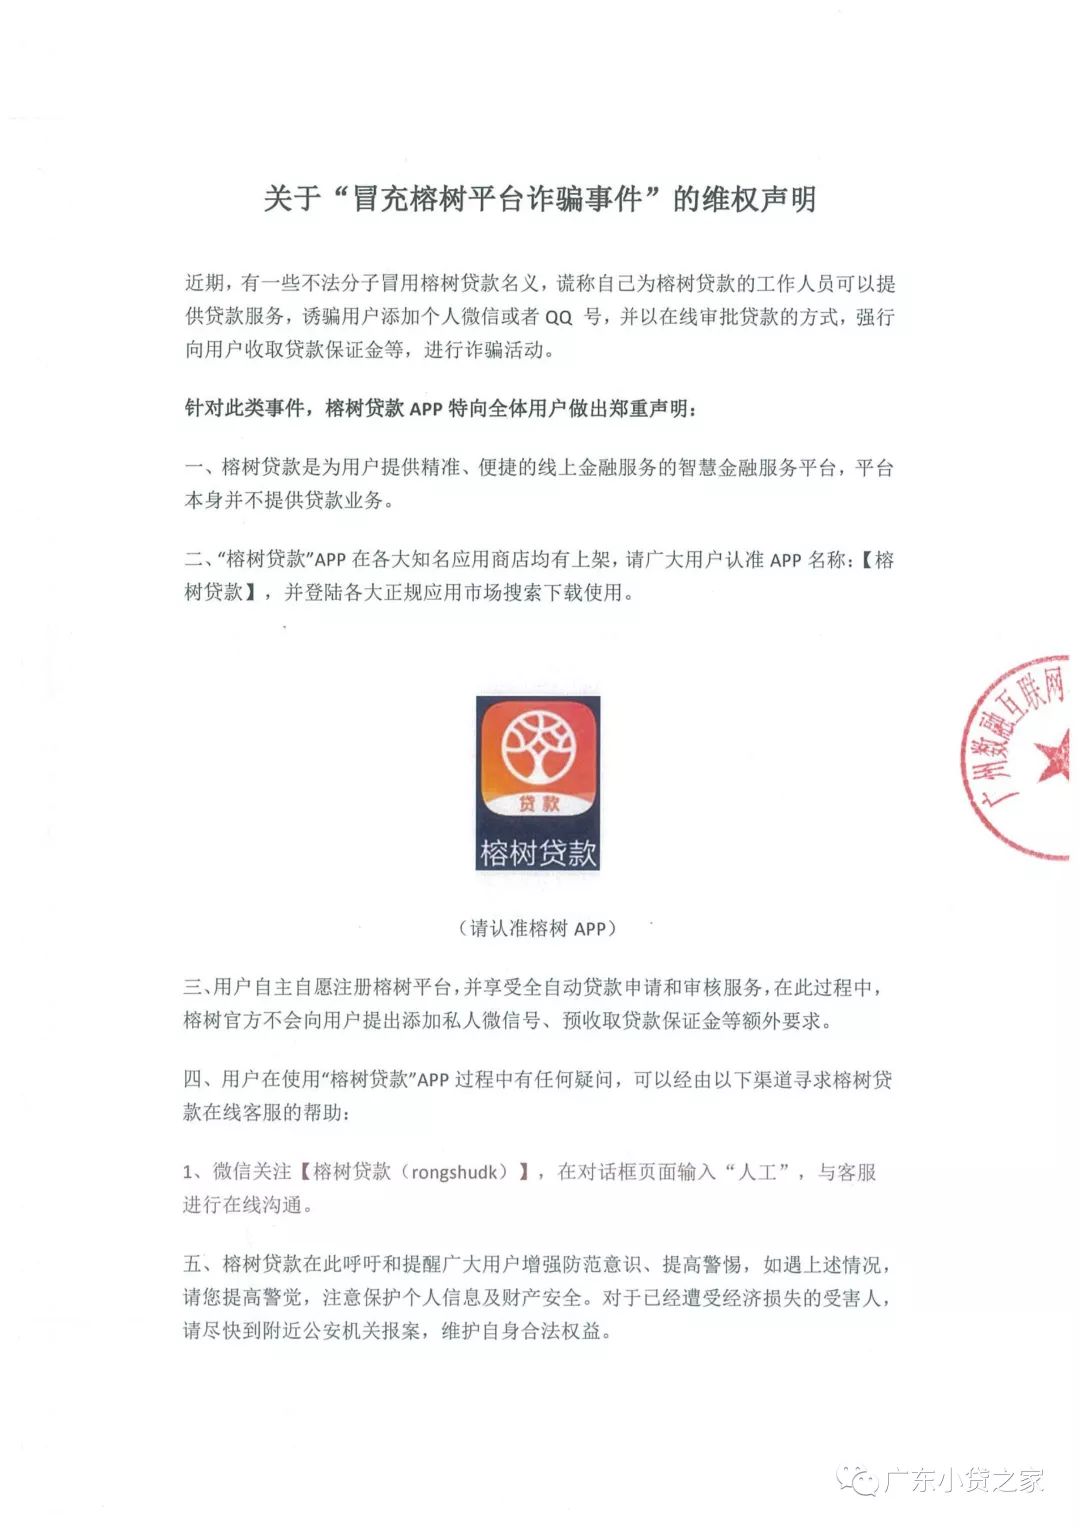 【重要通知】关于警惕不法分子假冒协会会员单位广州数融互联网小额贷款有限公司诈骗的声明